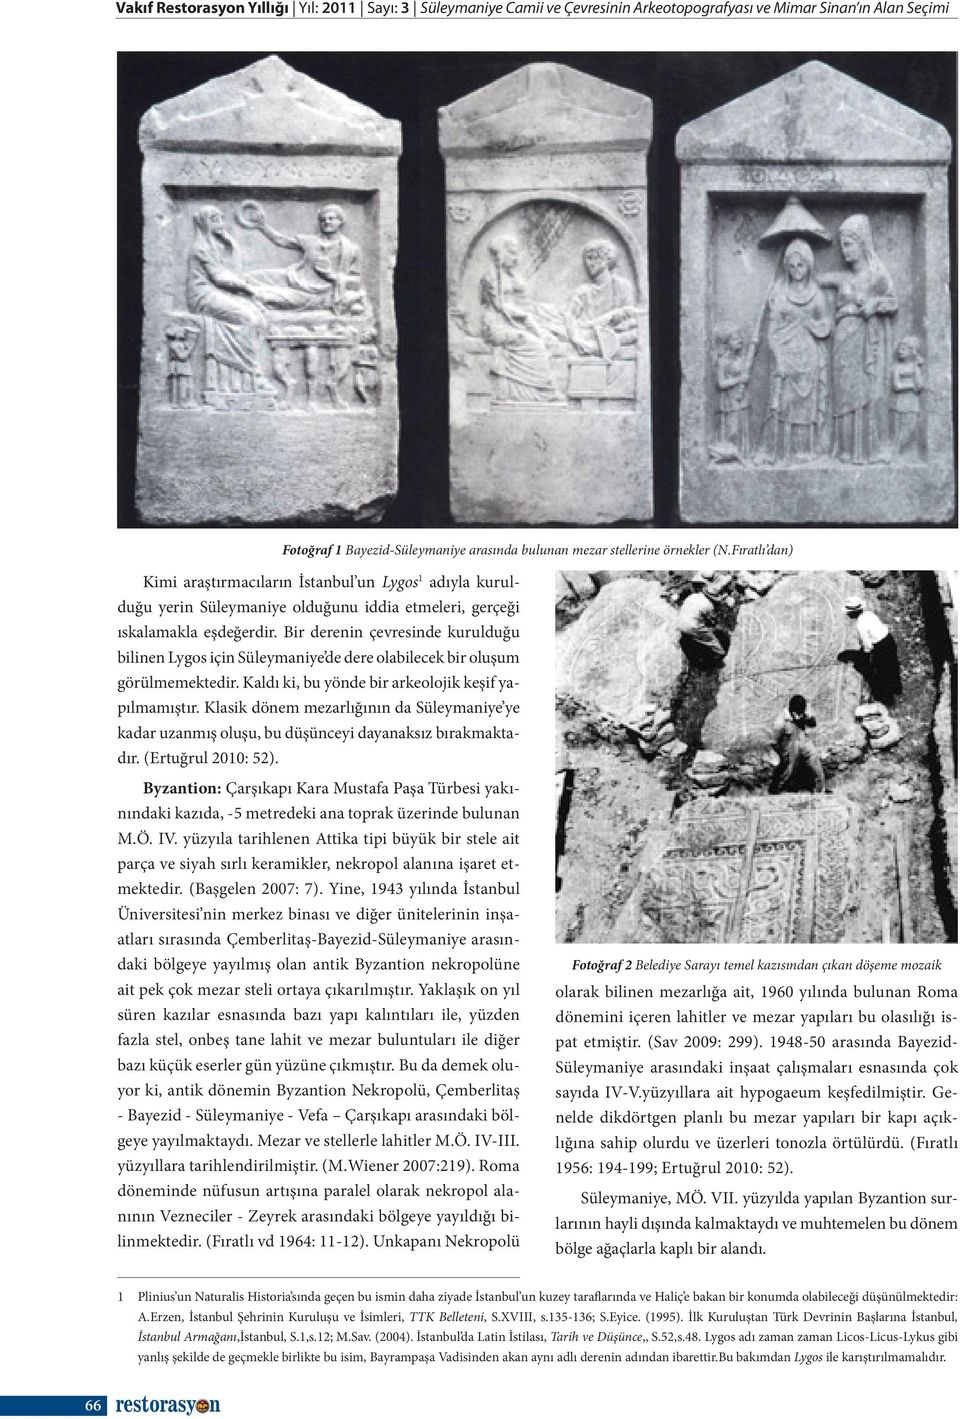 Bir derenin çevresinde kurulduğu bilinen Lygos için Süleymaniye de dere olabilecek bir oluşum görülmemektedir. Kaldı ki, bu yönde bir arkeolojik keşif yapılmamıştır.